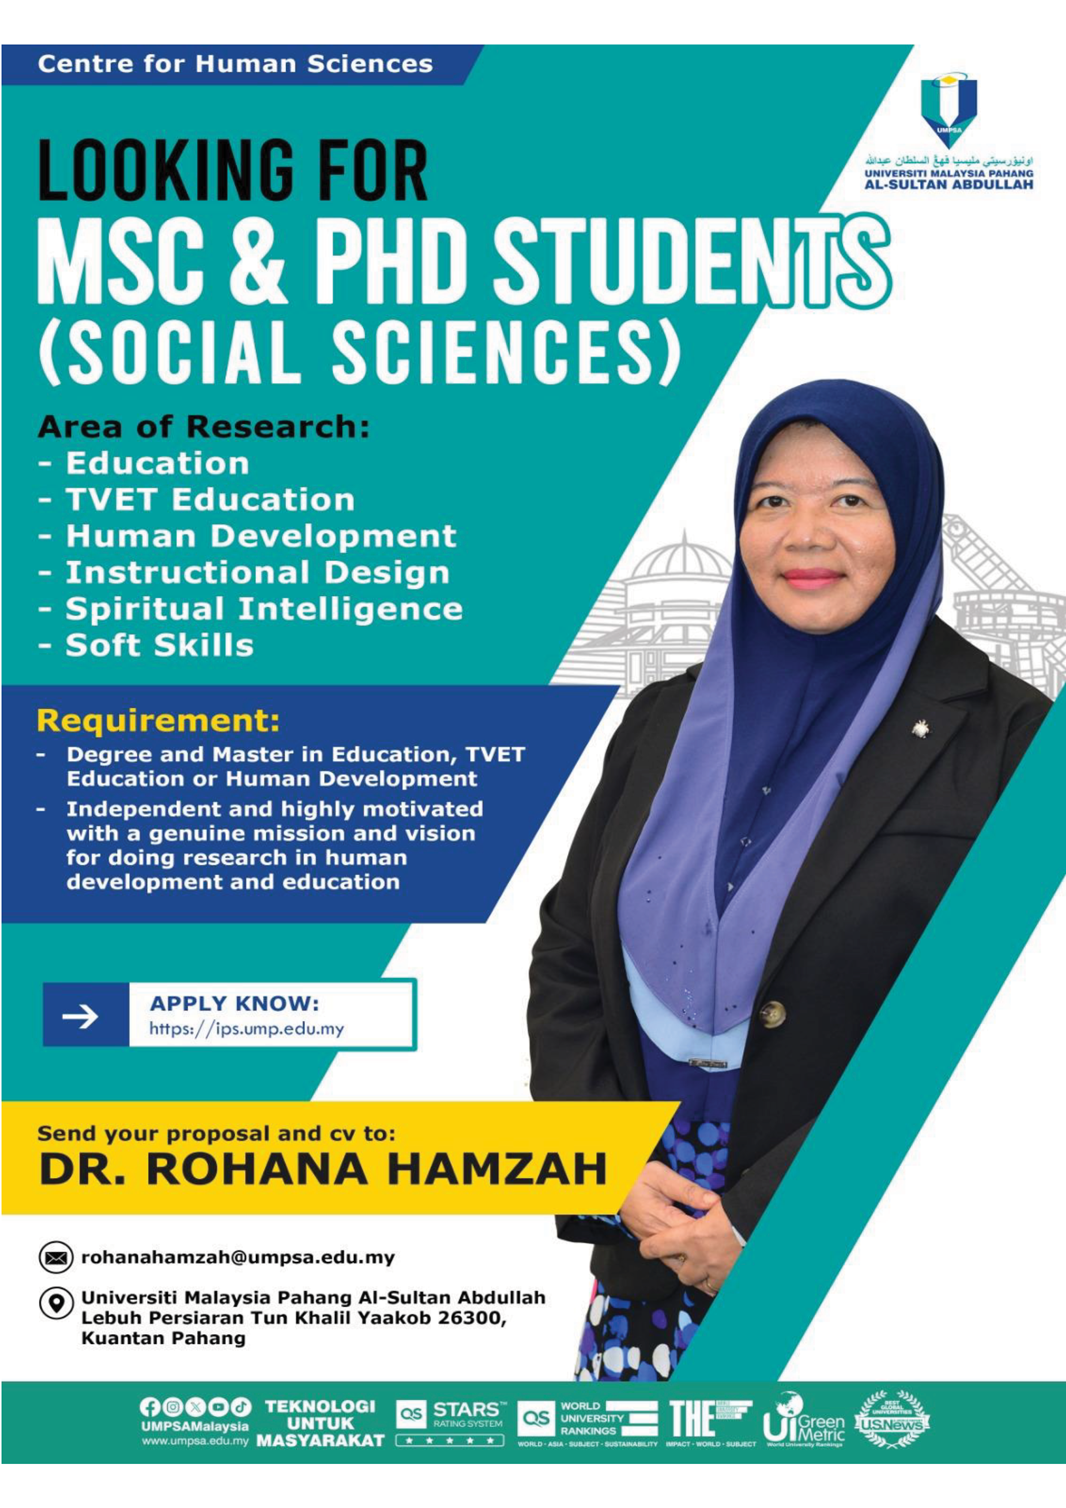 Dr. Rohana Hamzah